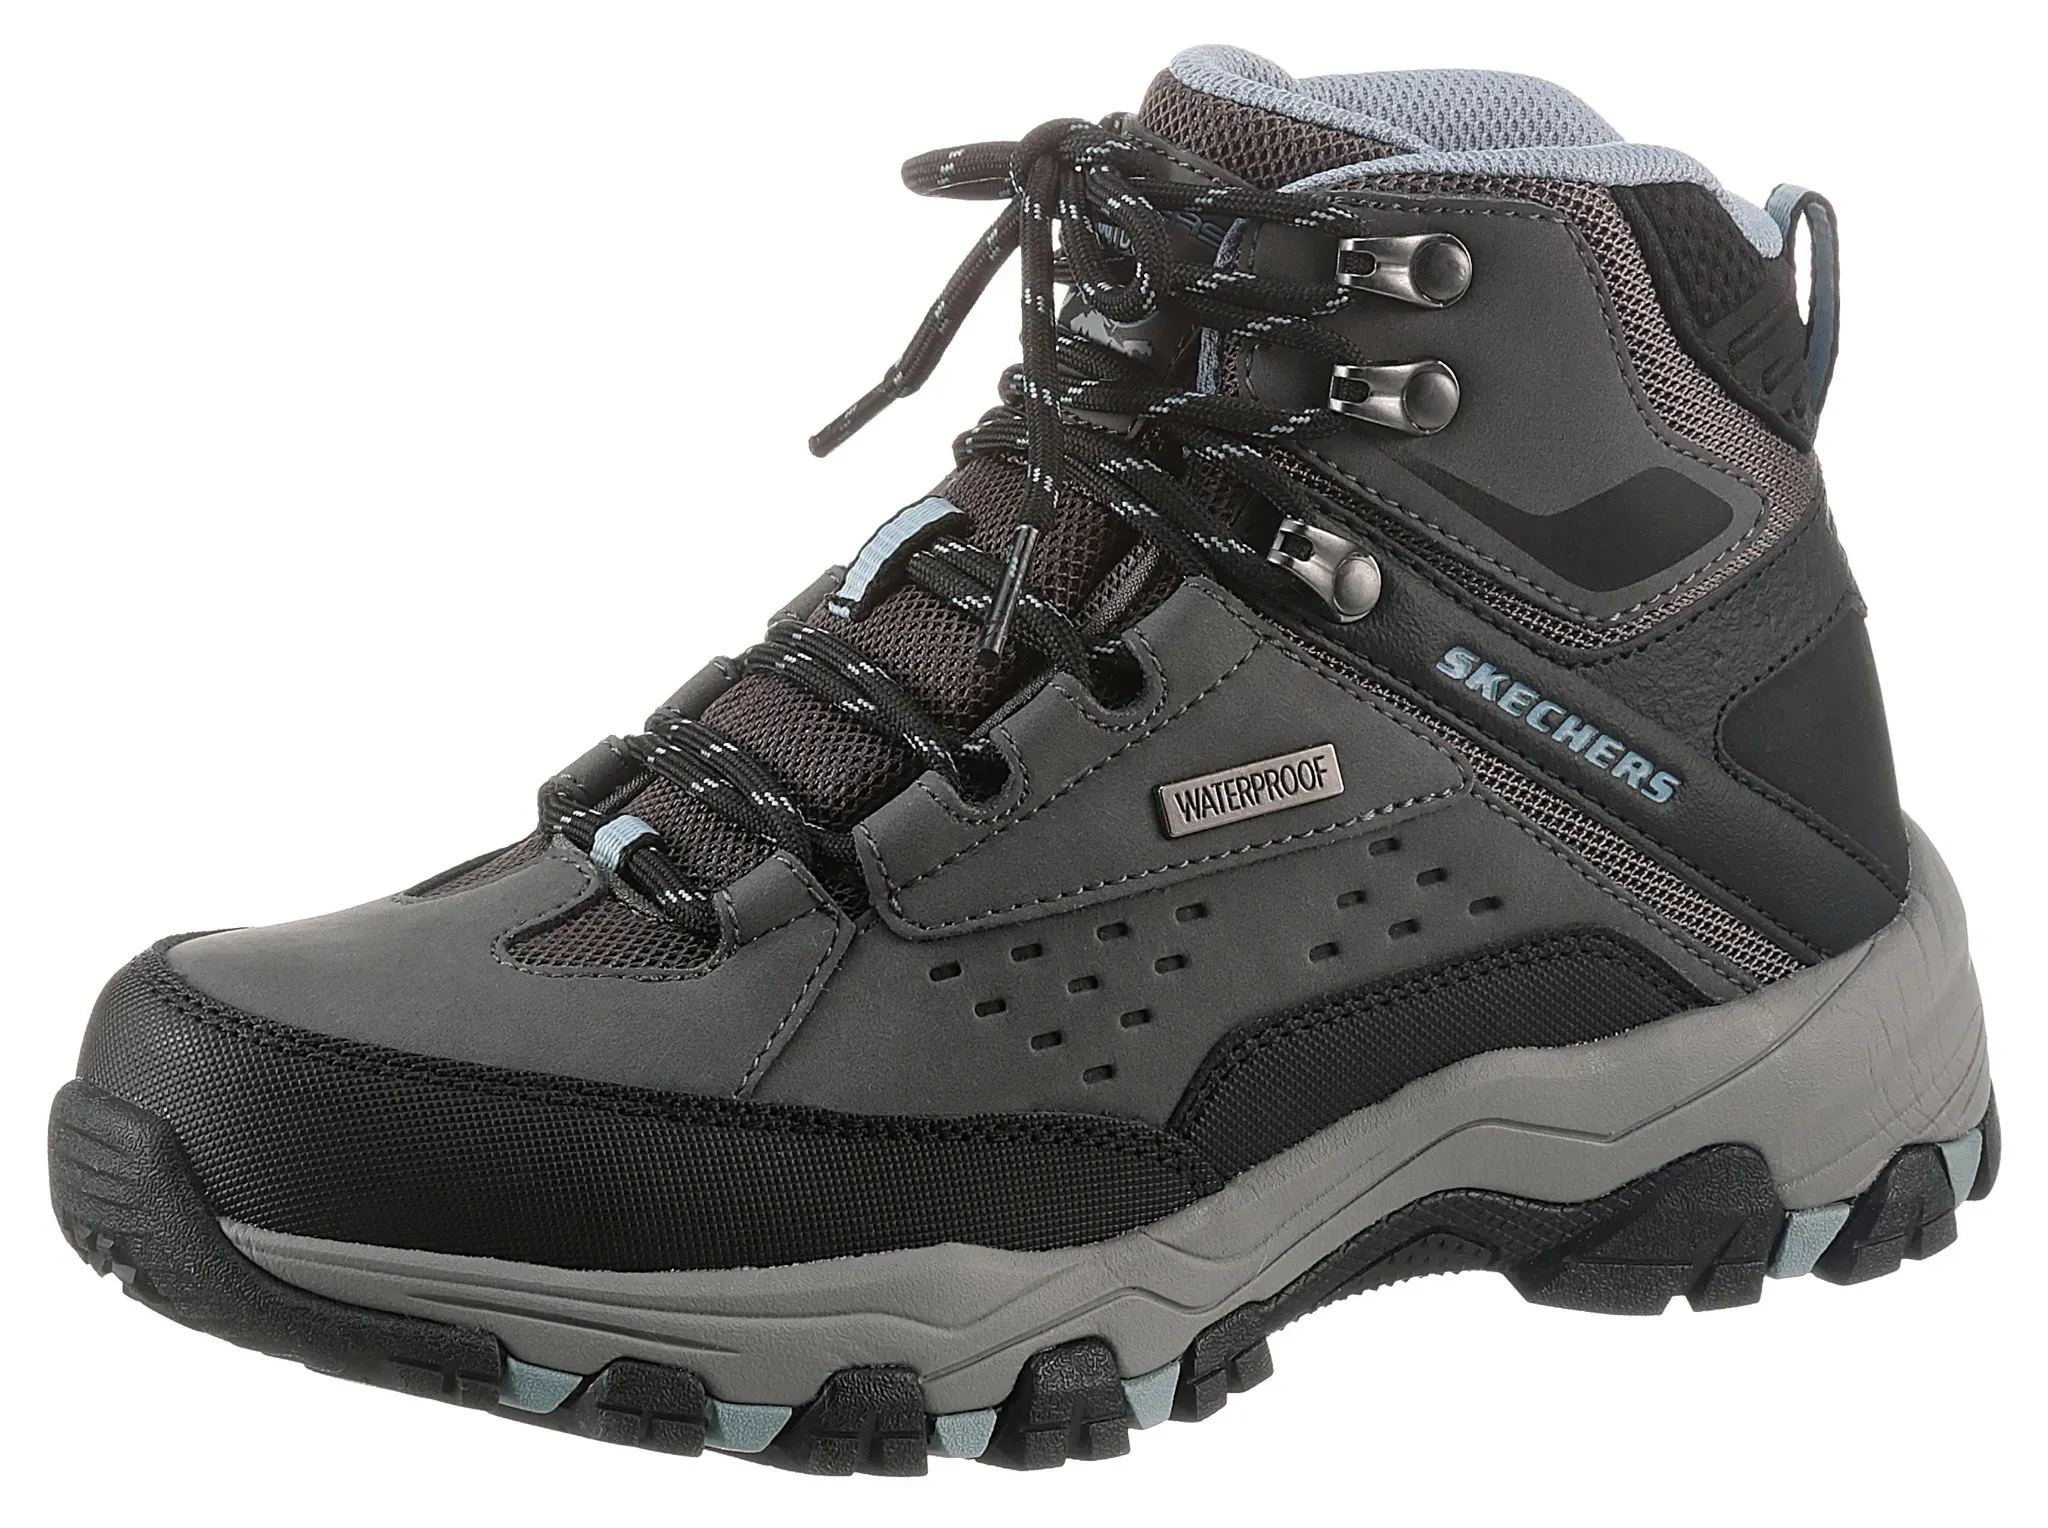 Schnürboots SKECHERS "SELMEN" Gr. 35, grau (grau, schwarz) Damen Schuhe Boots Schnürstiefeletten ideal für Outdoor-Aktivitäten